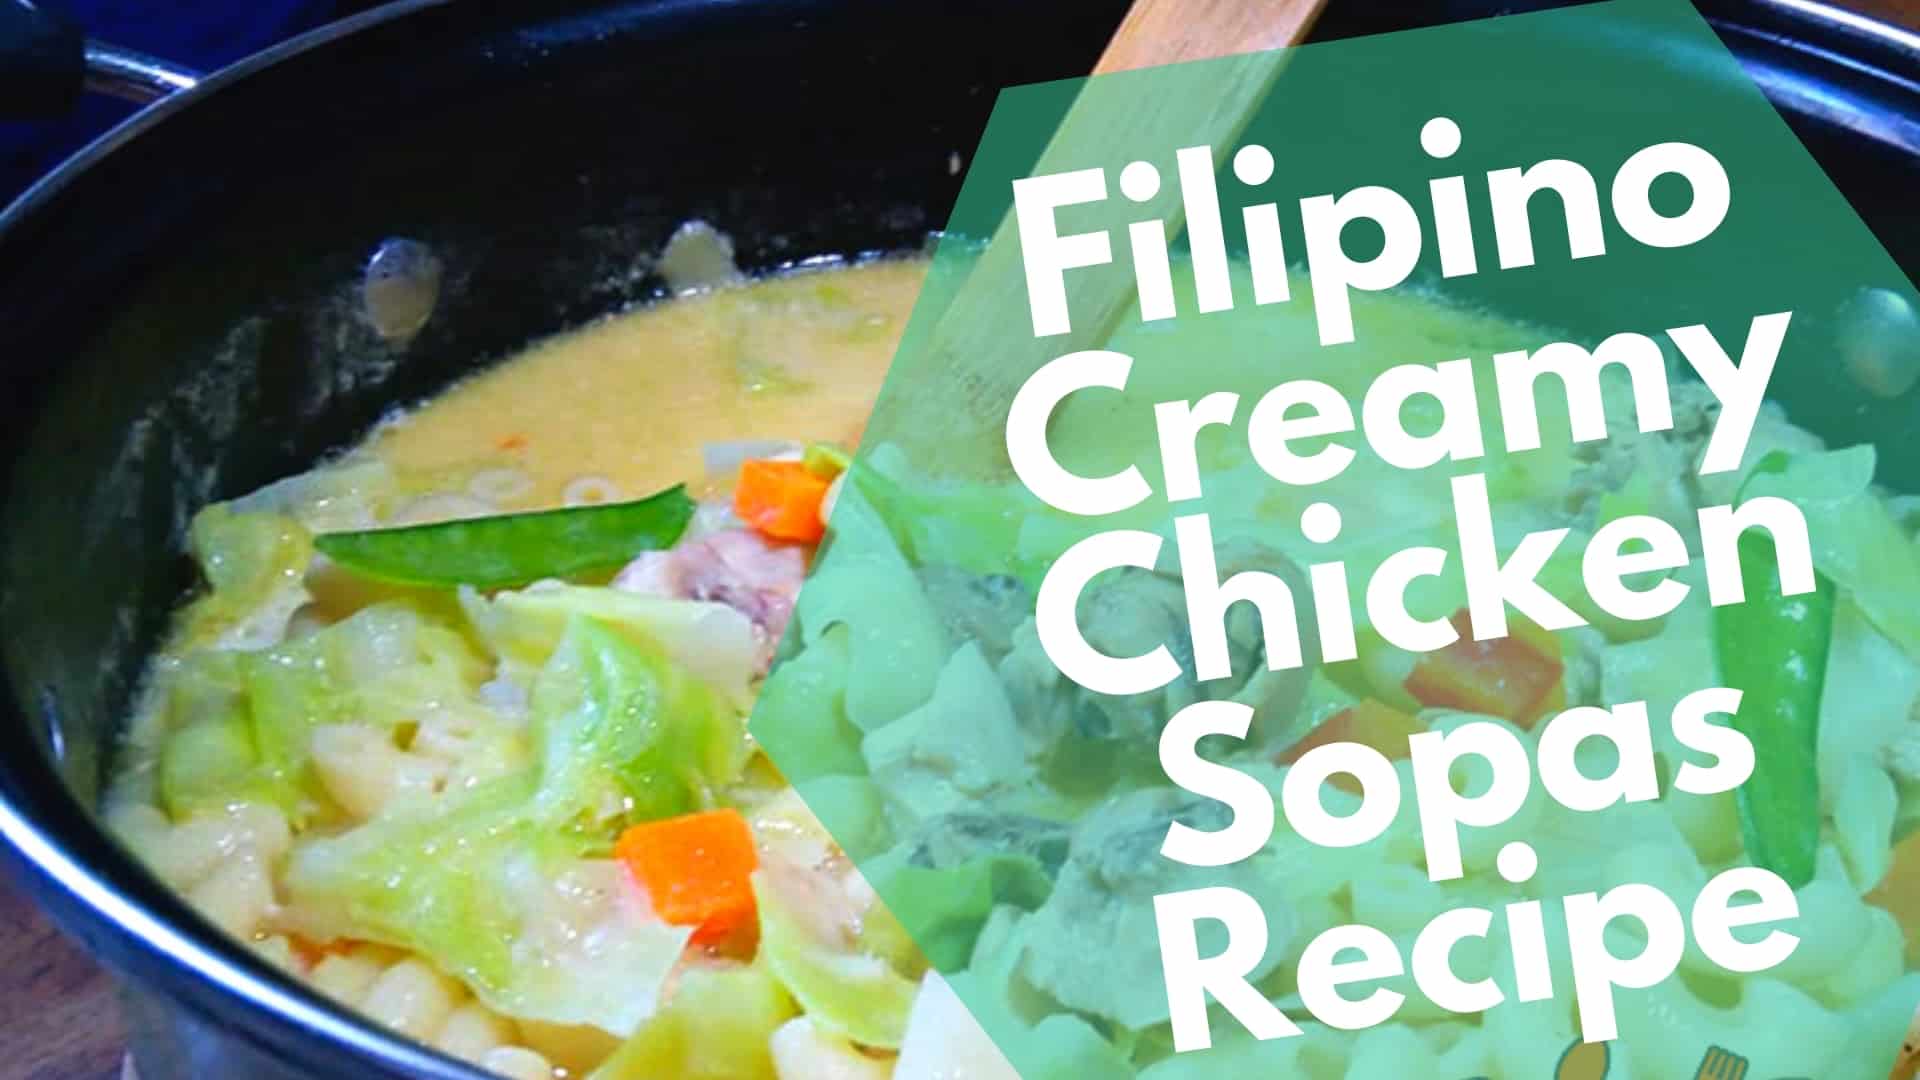 sopas recipe filipino